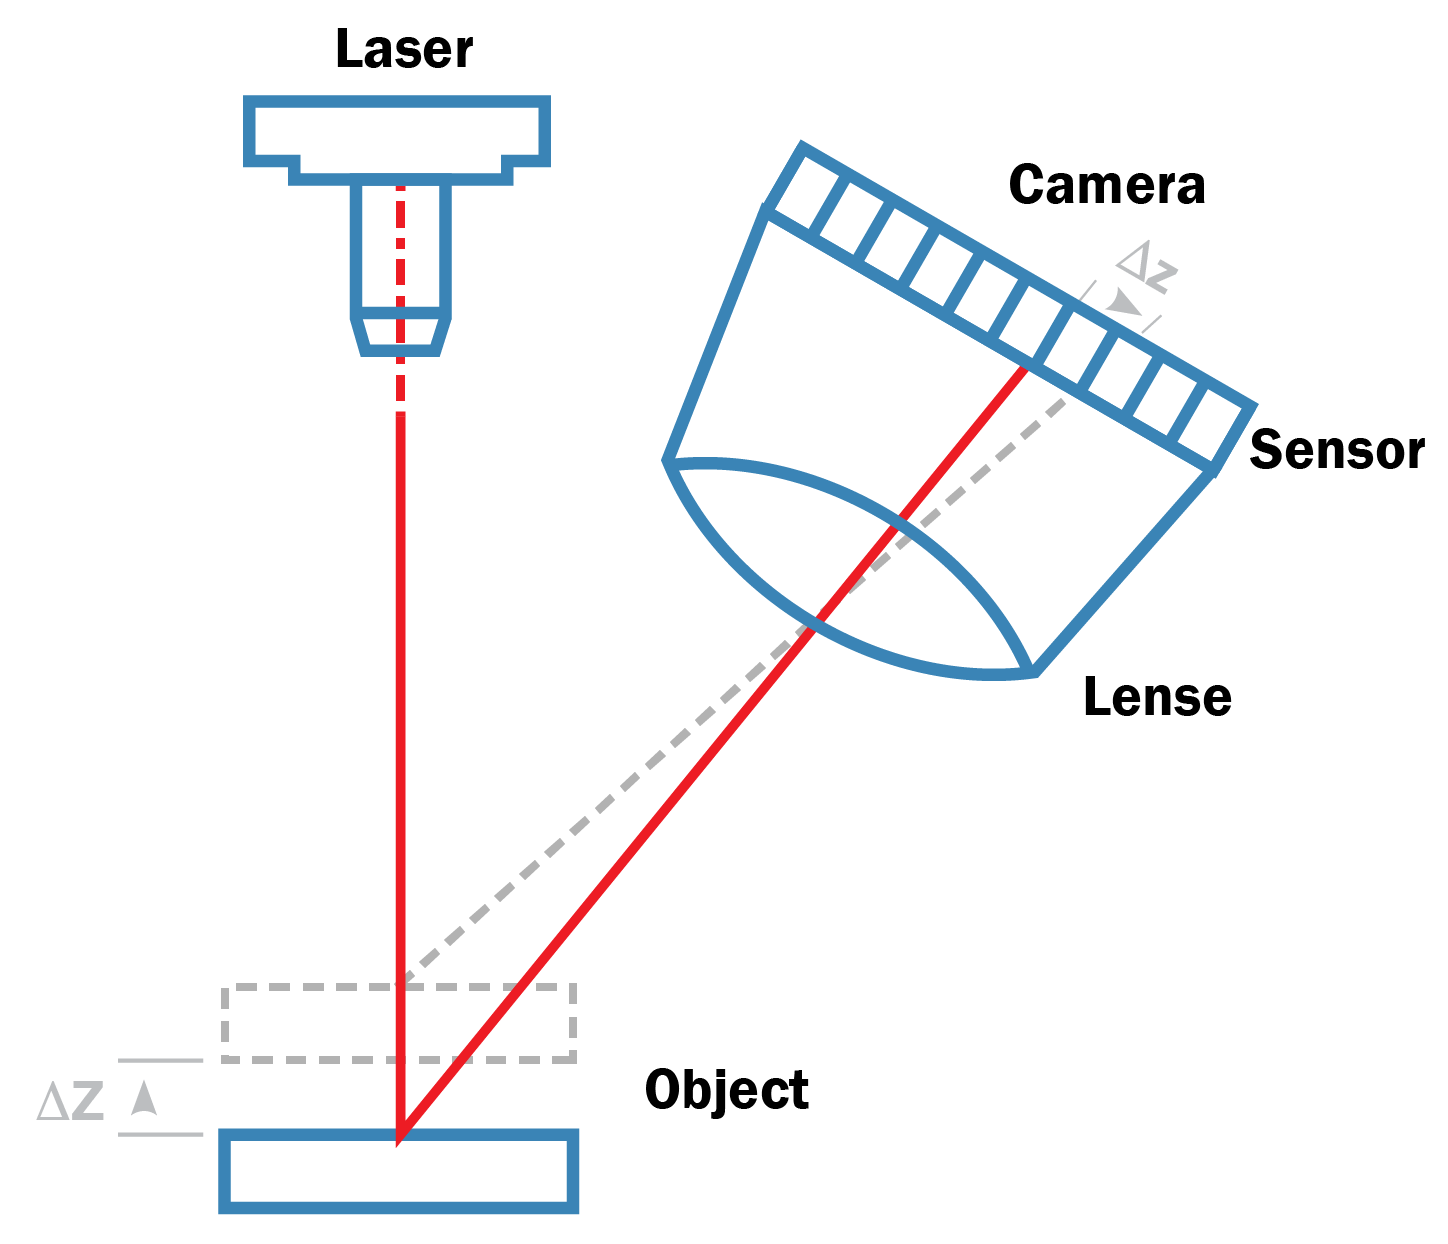 La technique du triangle forme un triangle composé de l'émetteur laser, de la réflexion du laser sur l'objet et de la caméra qui capture la réflexion du laser.